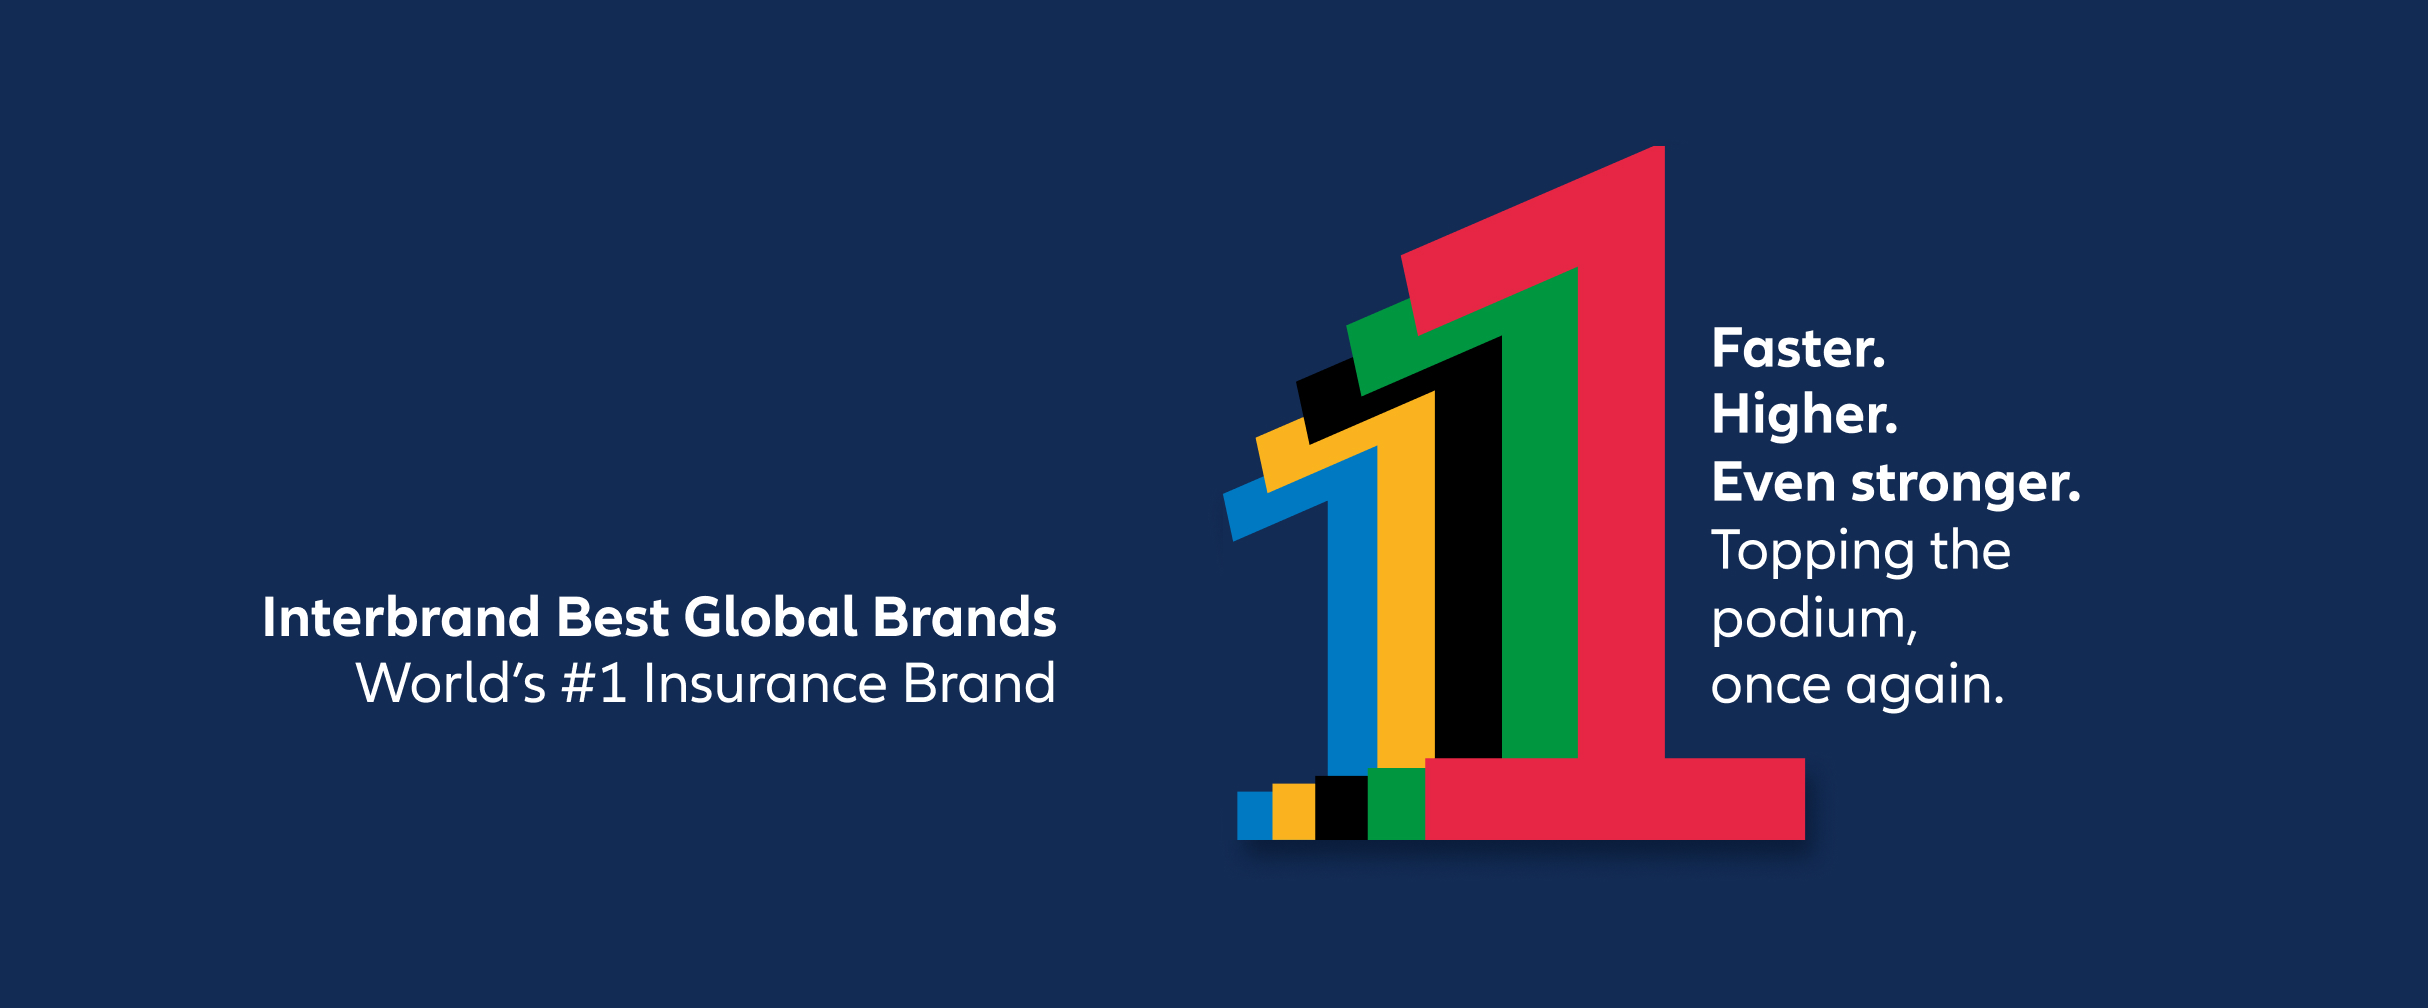 Übereinander gelagerte farbige Einsen Illustration mit Schriftzug in English " Interbrand Best Global Brands. World's #1 Insurance Brand.Faster. Higher. Even stronger. Topping the podium, once again." 